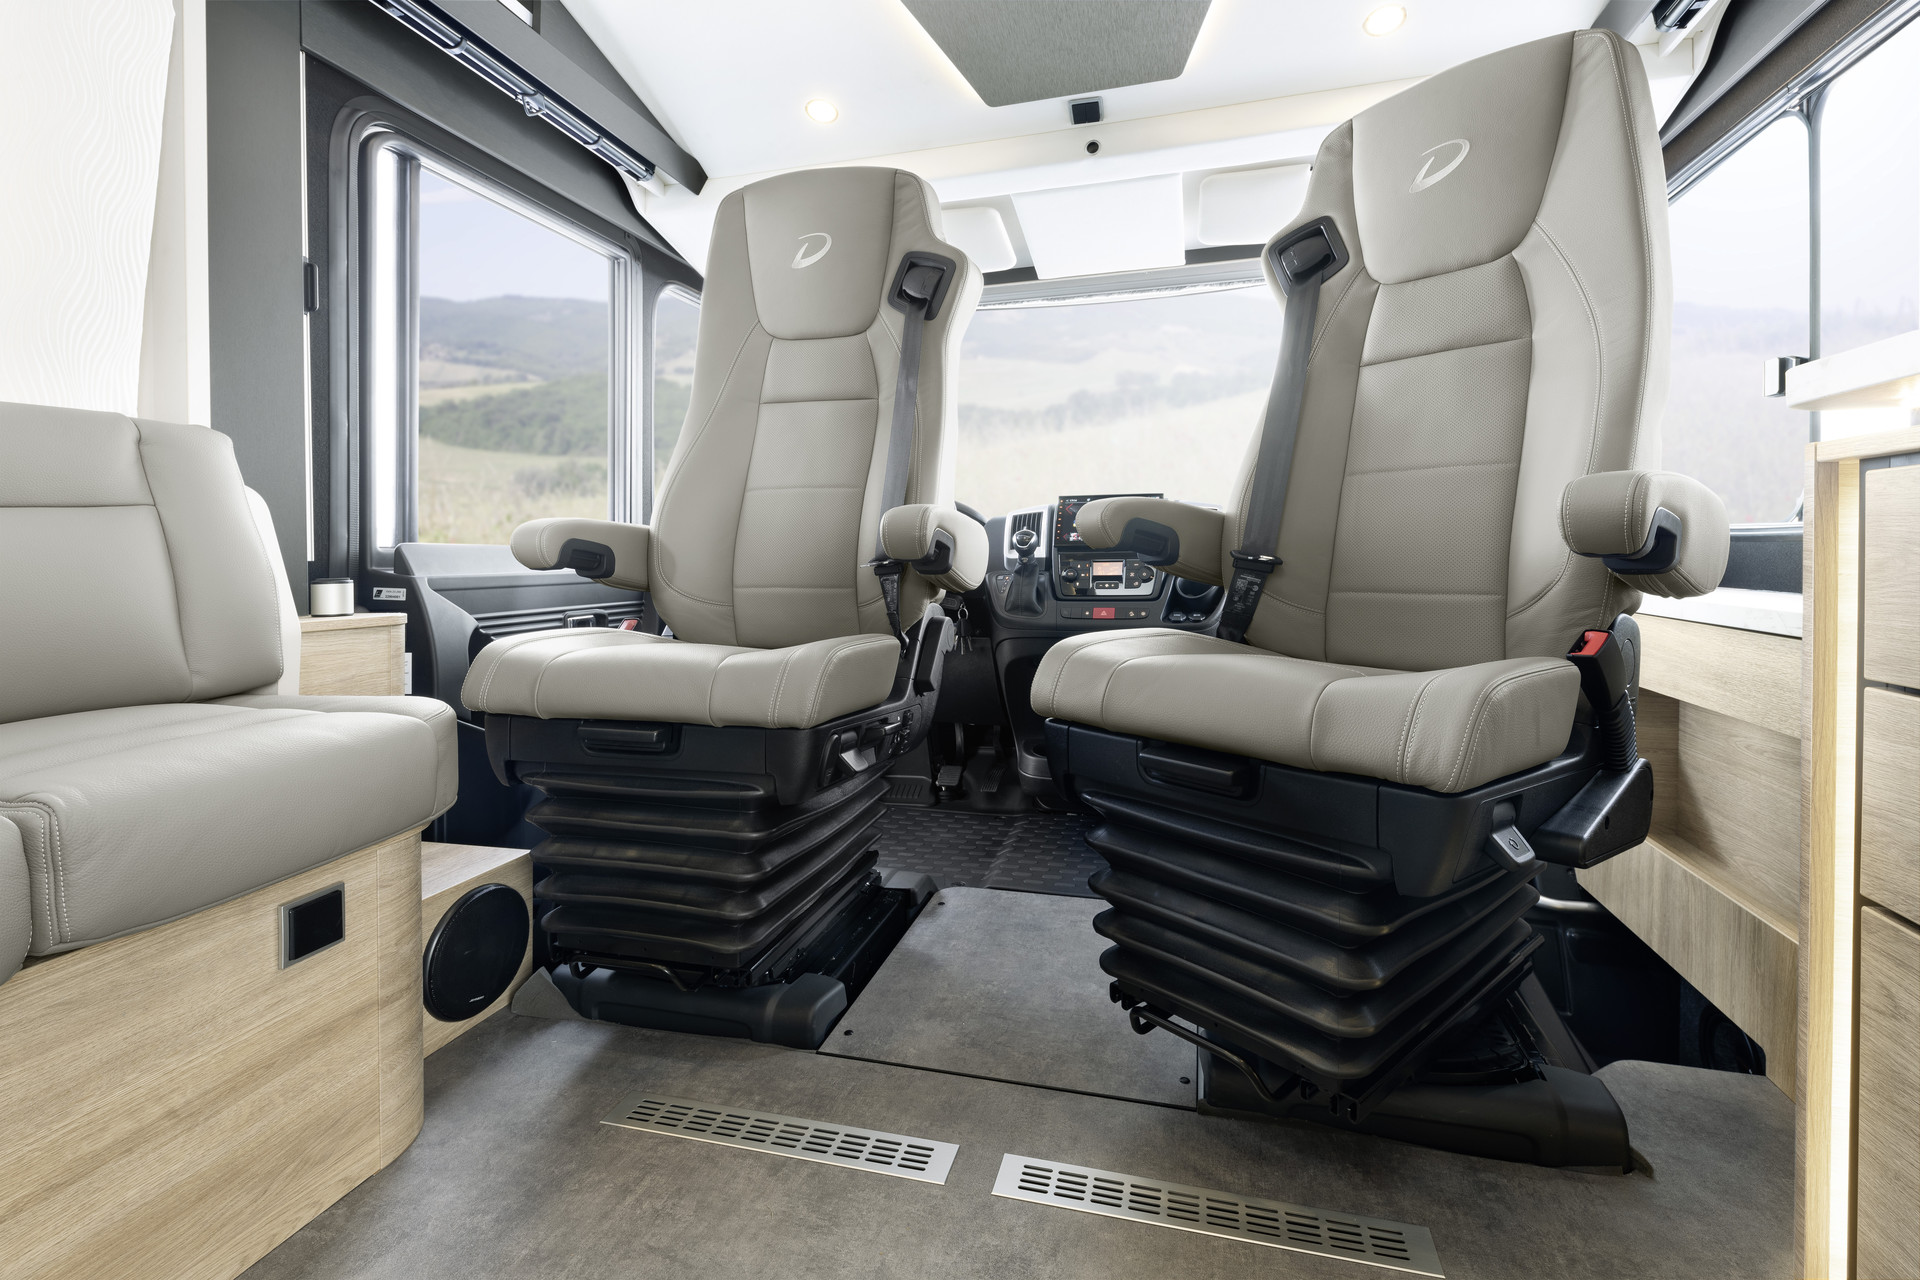 Voyage en première classe sur les sièges pivotants pneumatiques absorbant les chocs et dotés d’une assise chauffante et aérée (option)